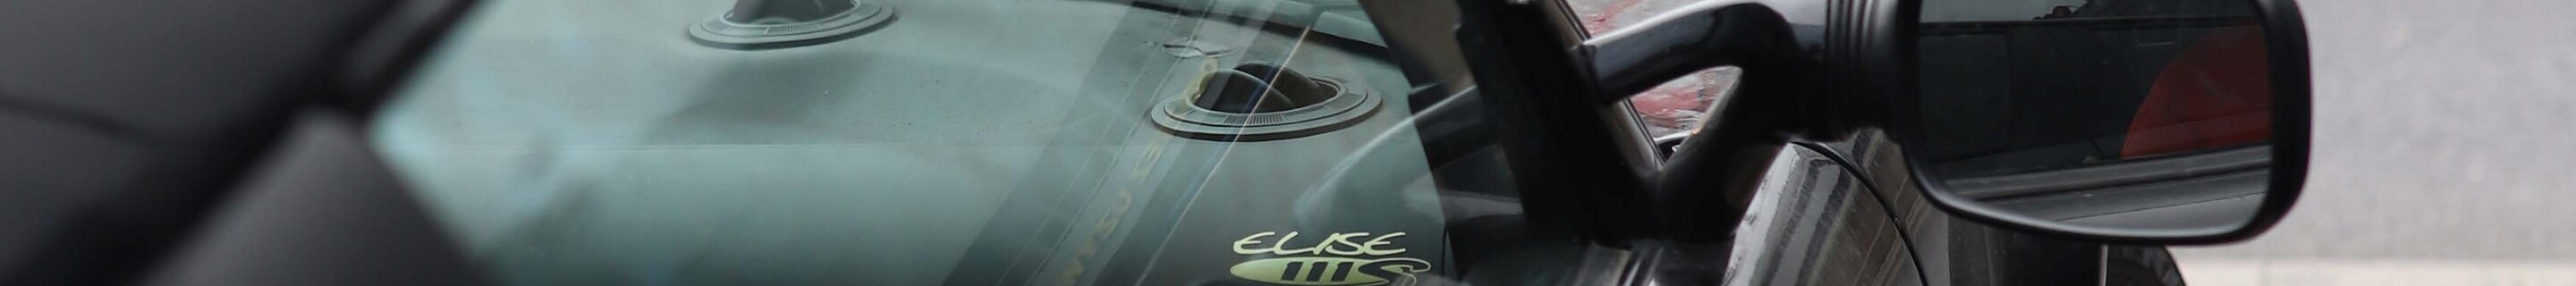 Lotus Elise S1 111S